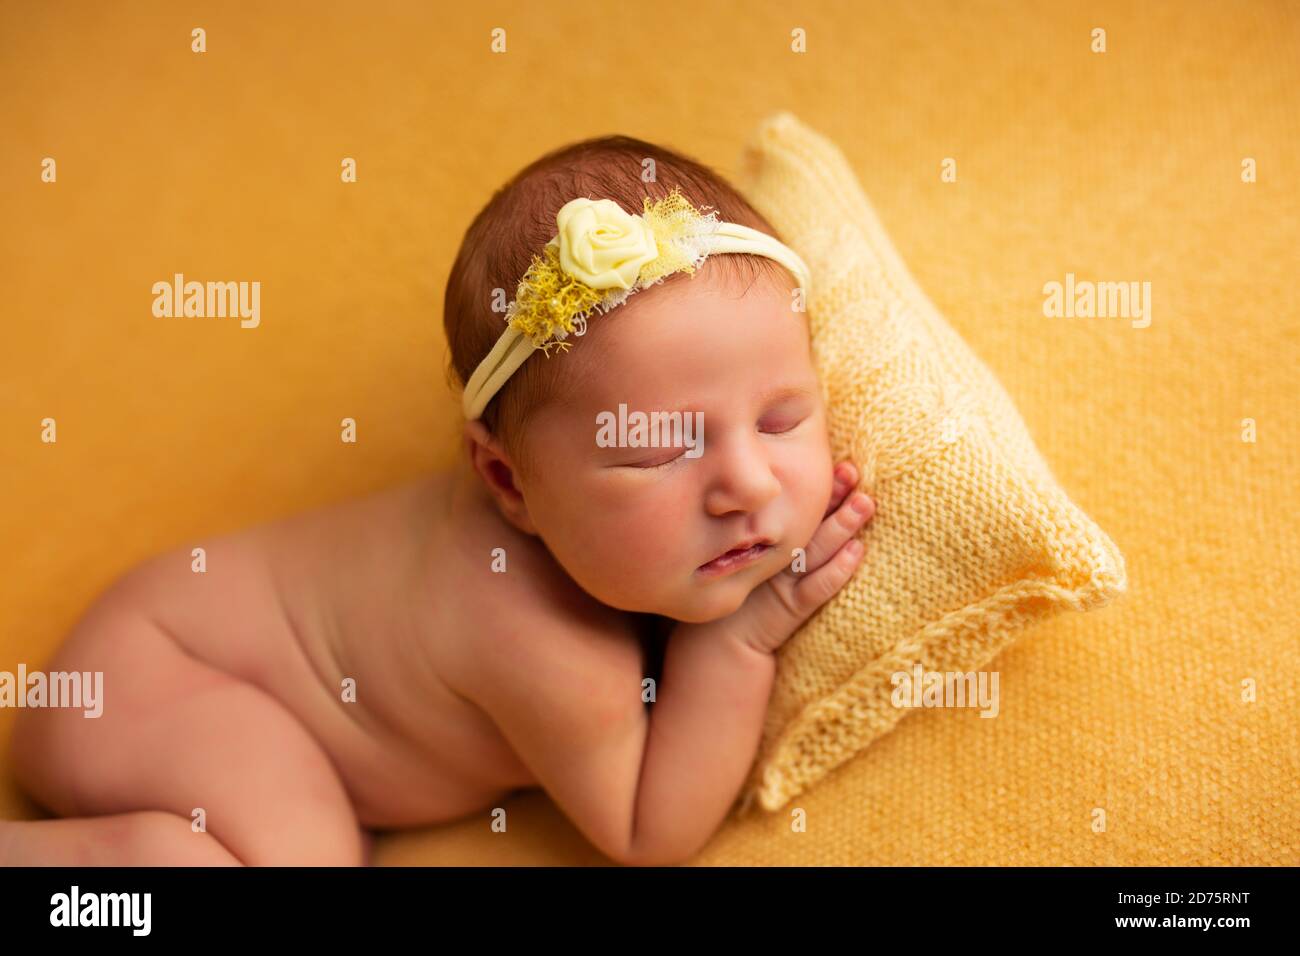 ritratto di una bella bambina di sette giorni. Sta dormendo in una posizione fetale arricciata su una coperta gialla Foto Stock